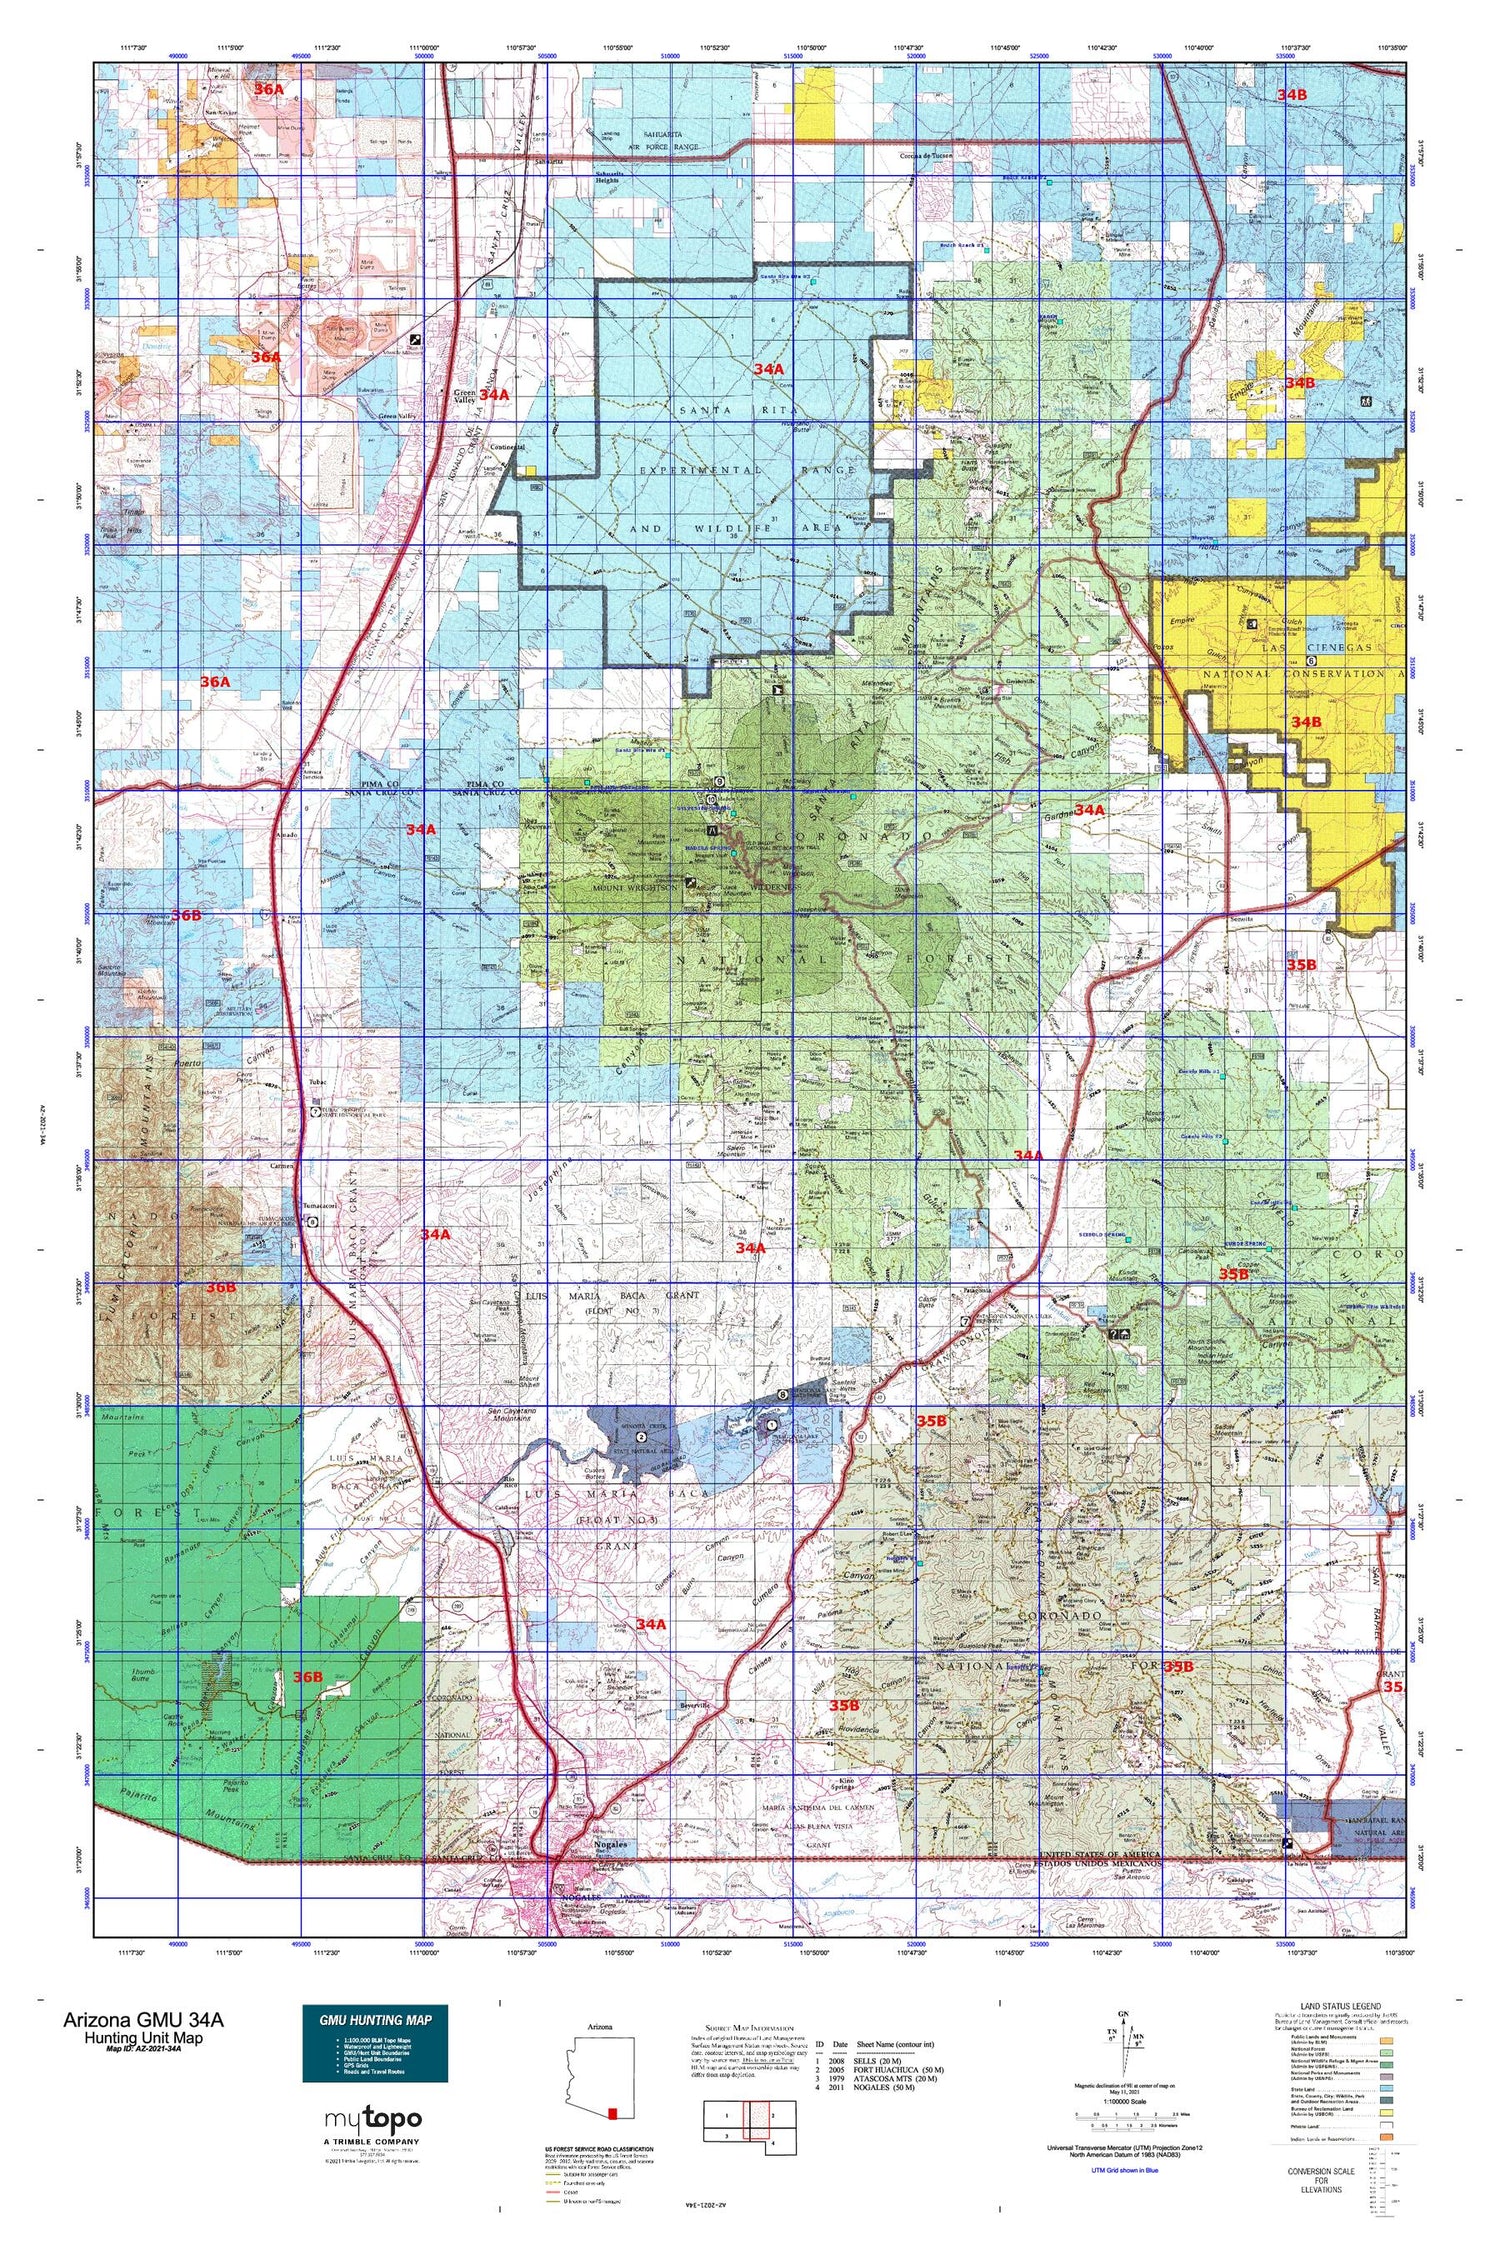 Arizona GMU 34A Map Image